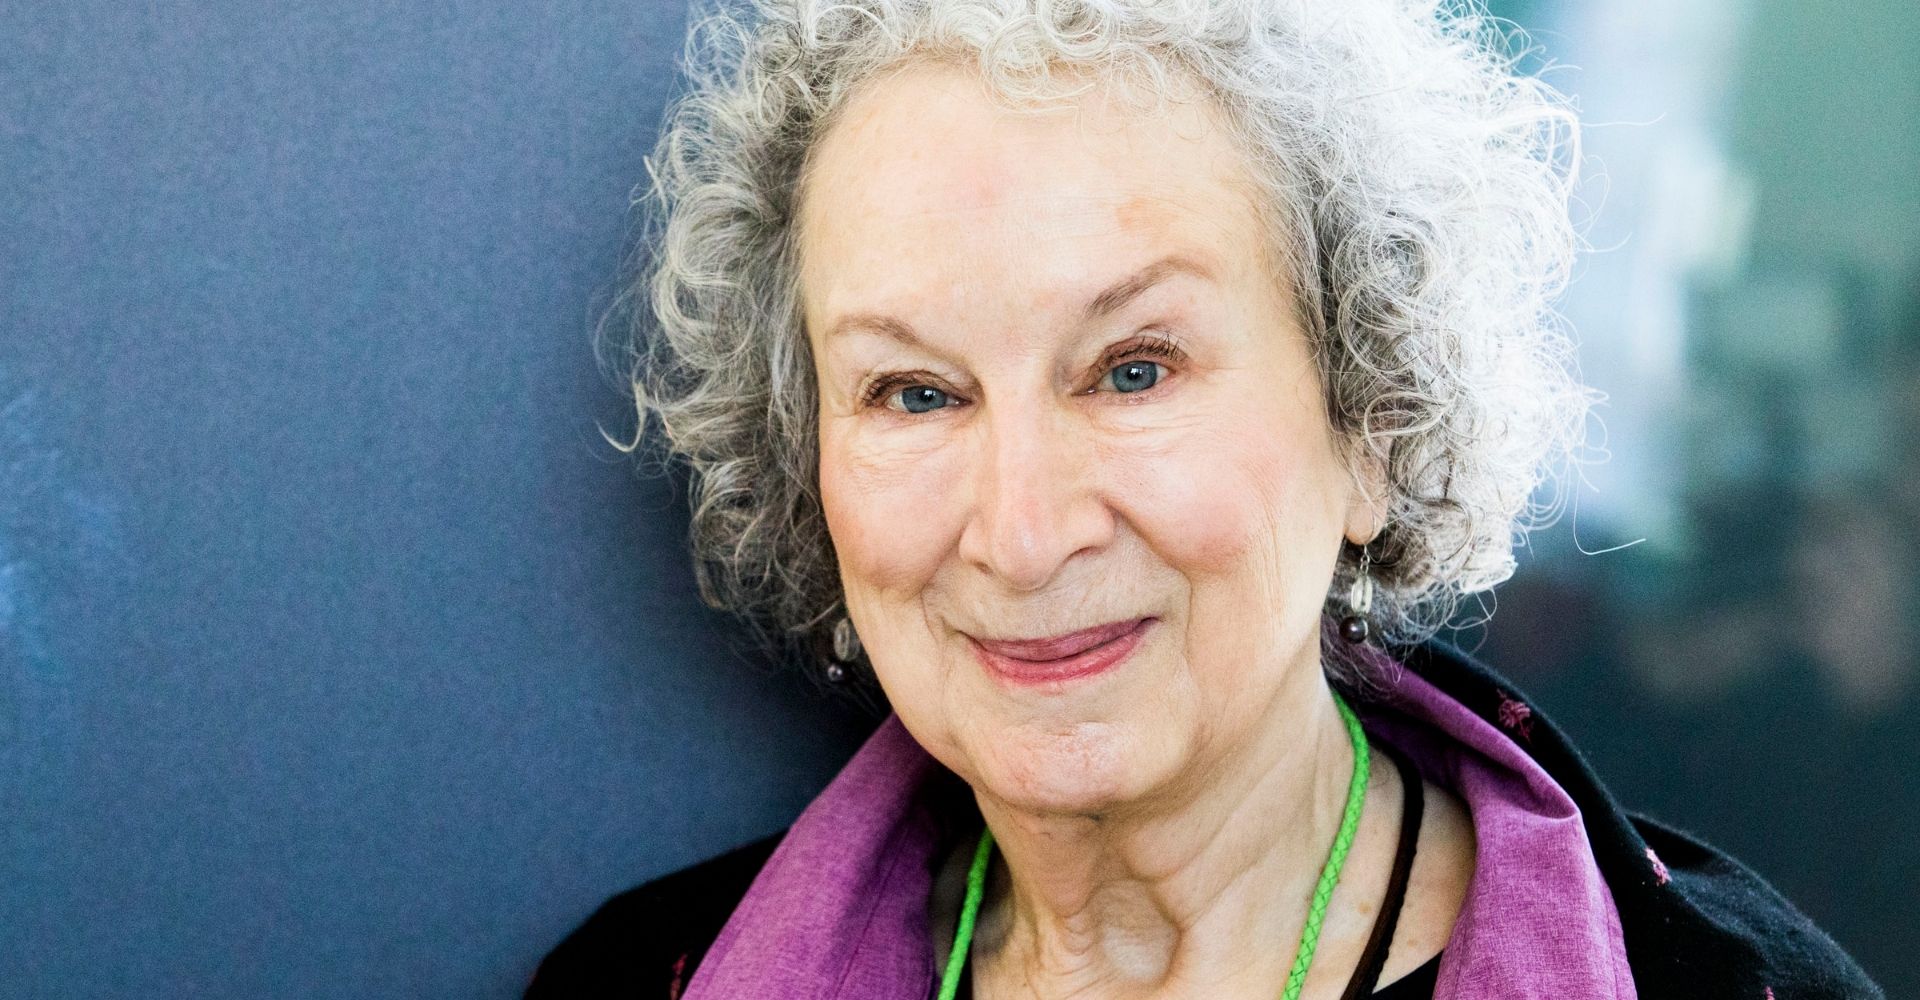 Le riflessioni di Margaret Atwood sui tempi che corrono sono "Questioni scottanti"